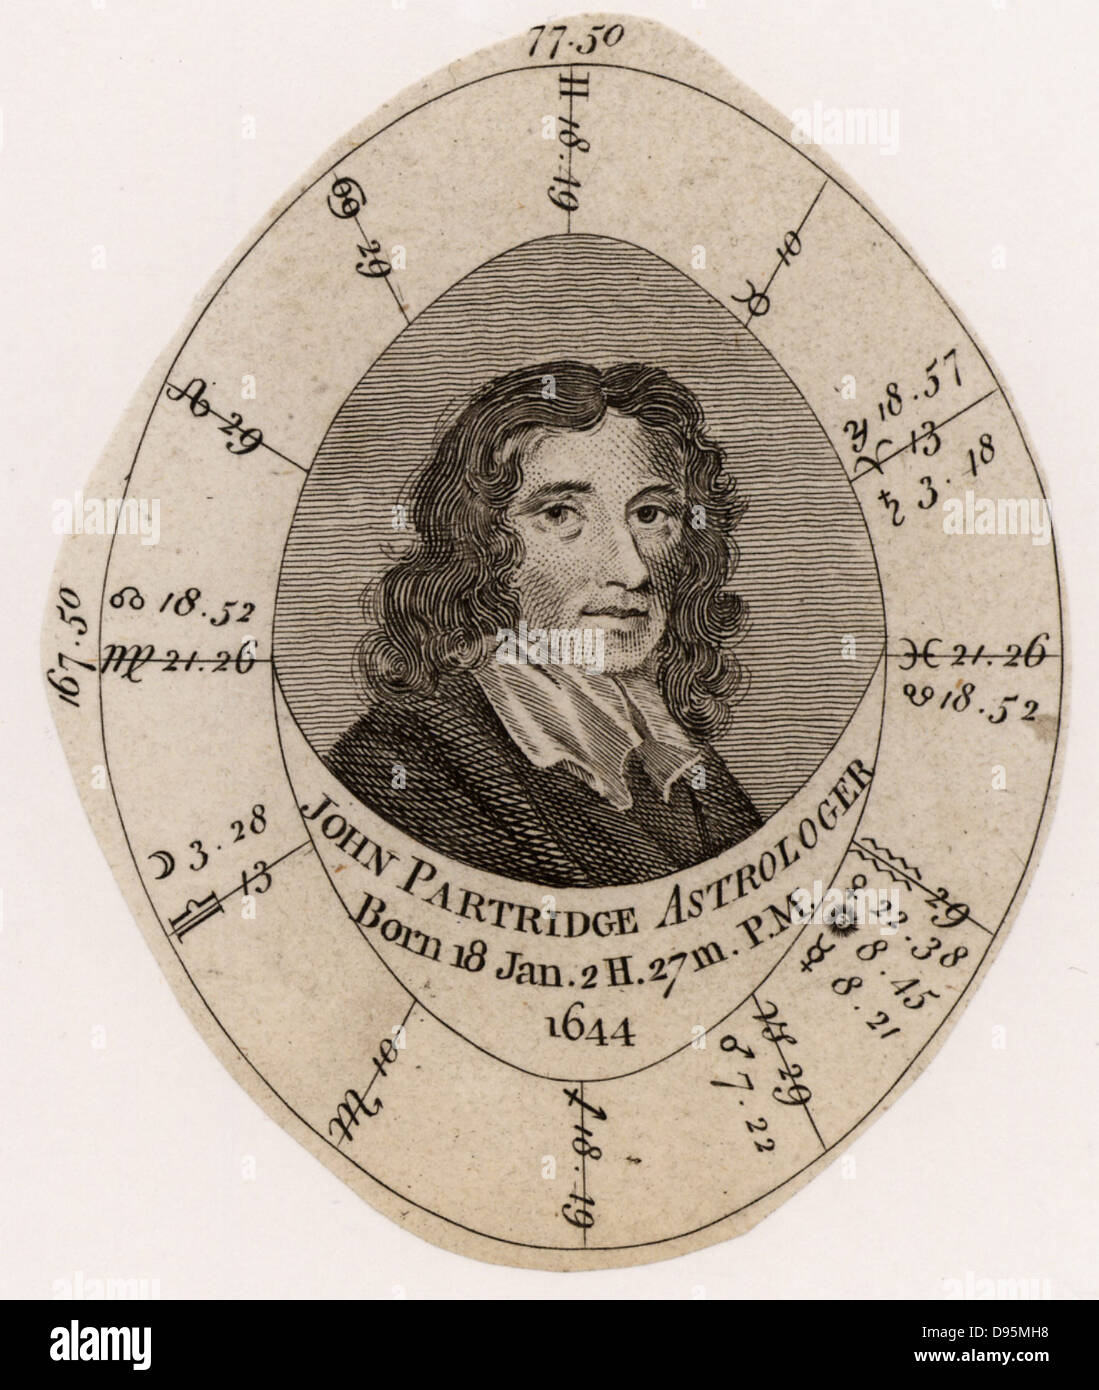 John Partridge (1644-1715) et de l'astrologue anglais almanac bouilloire. Carte de naissance ou Nativité. Gravure c1800. Banque D'Images